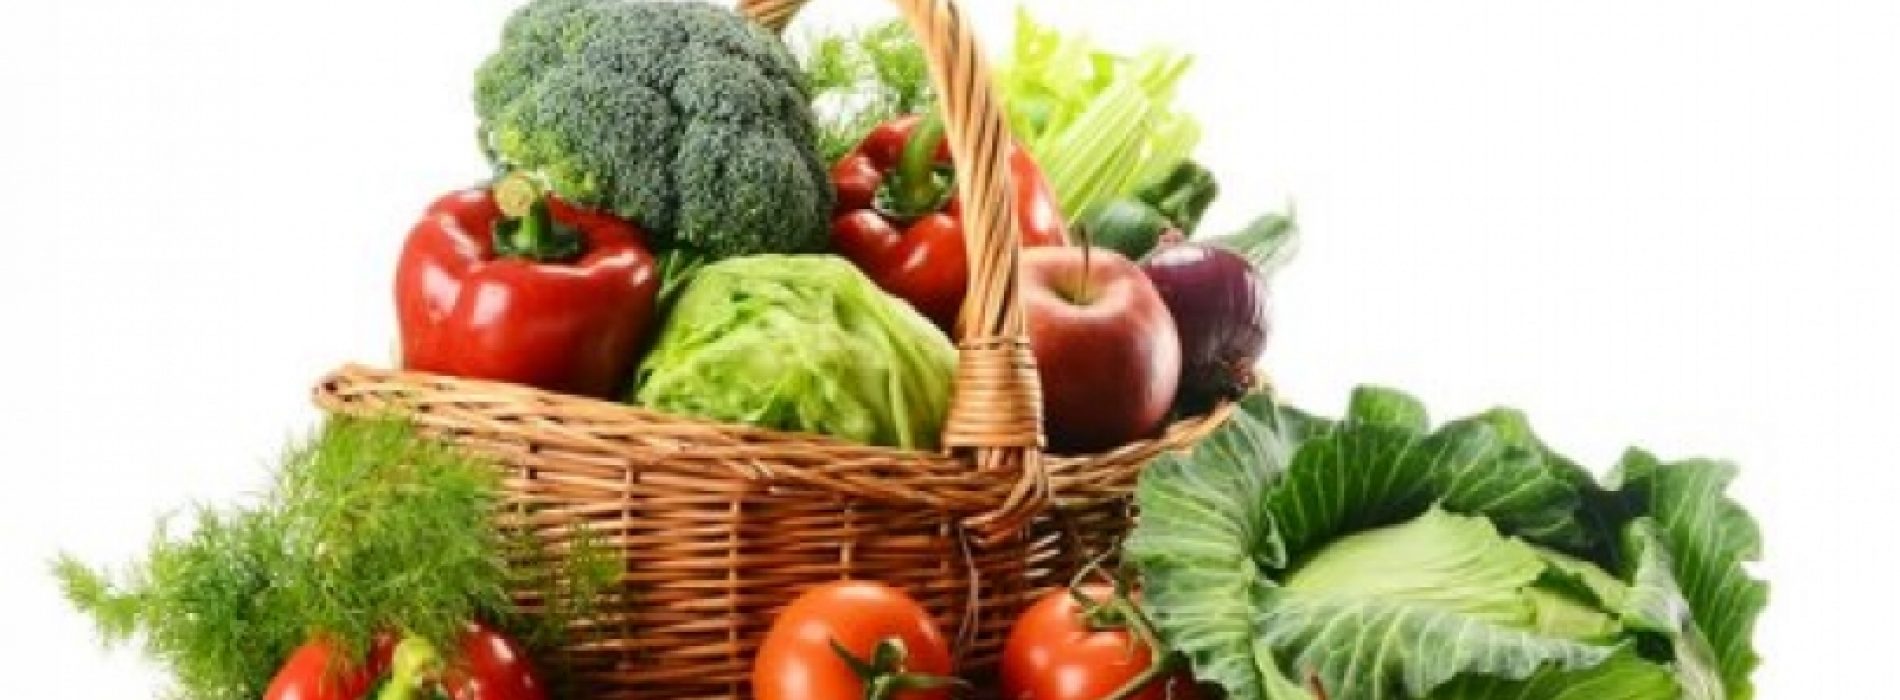 10 supergezonde magnesiumrijke voedingsmiddelen